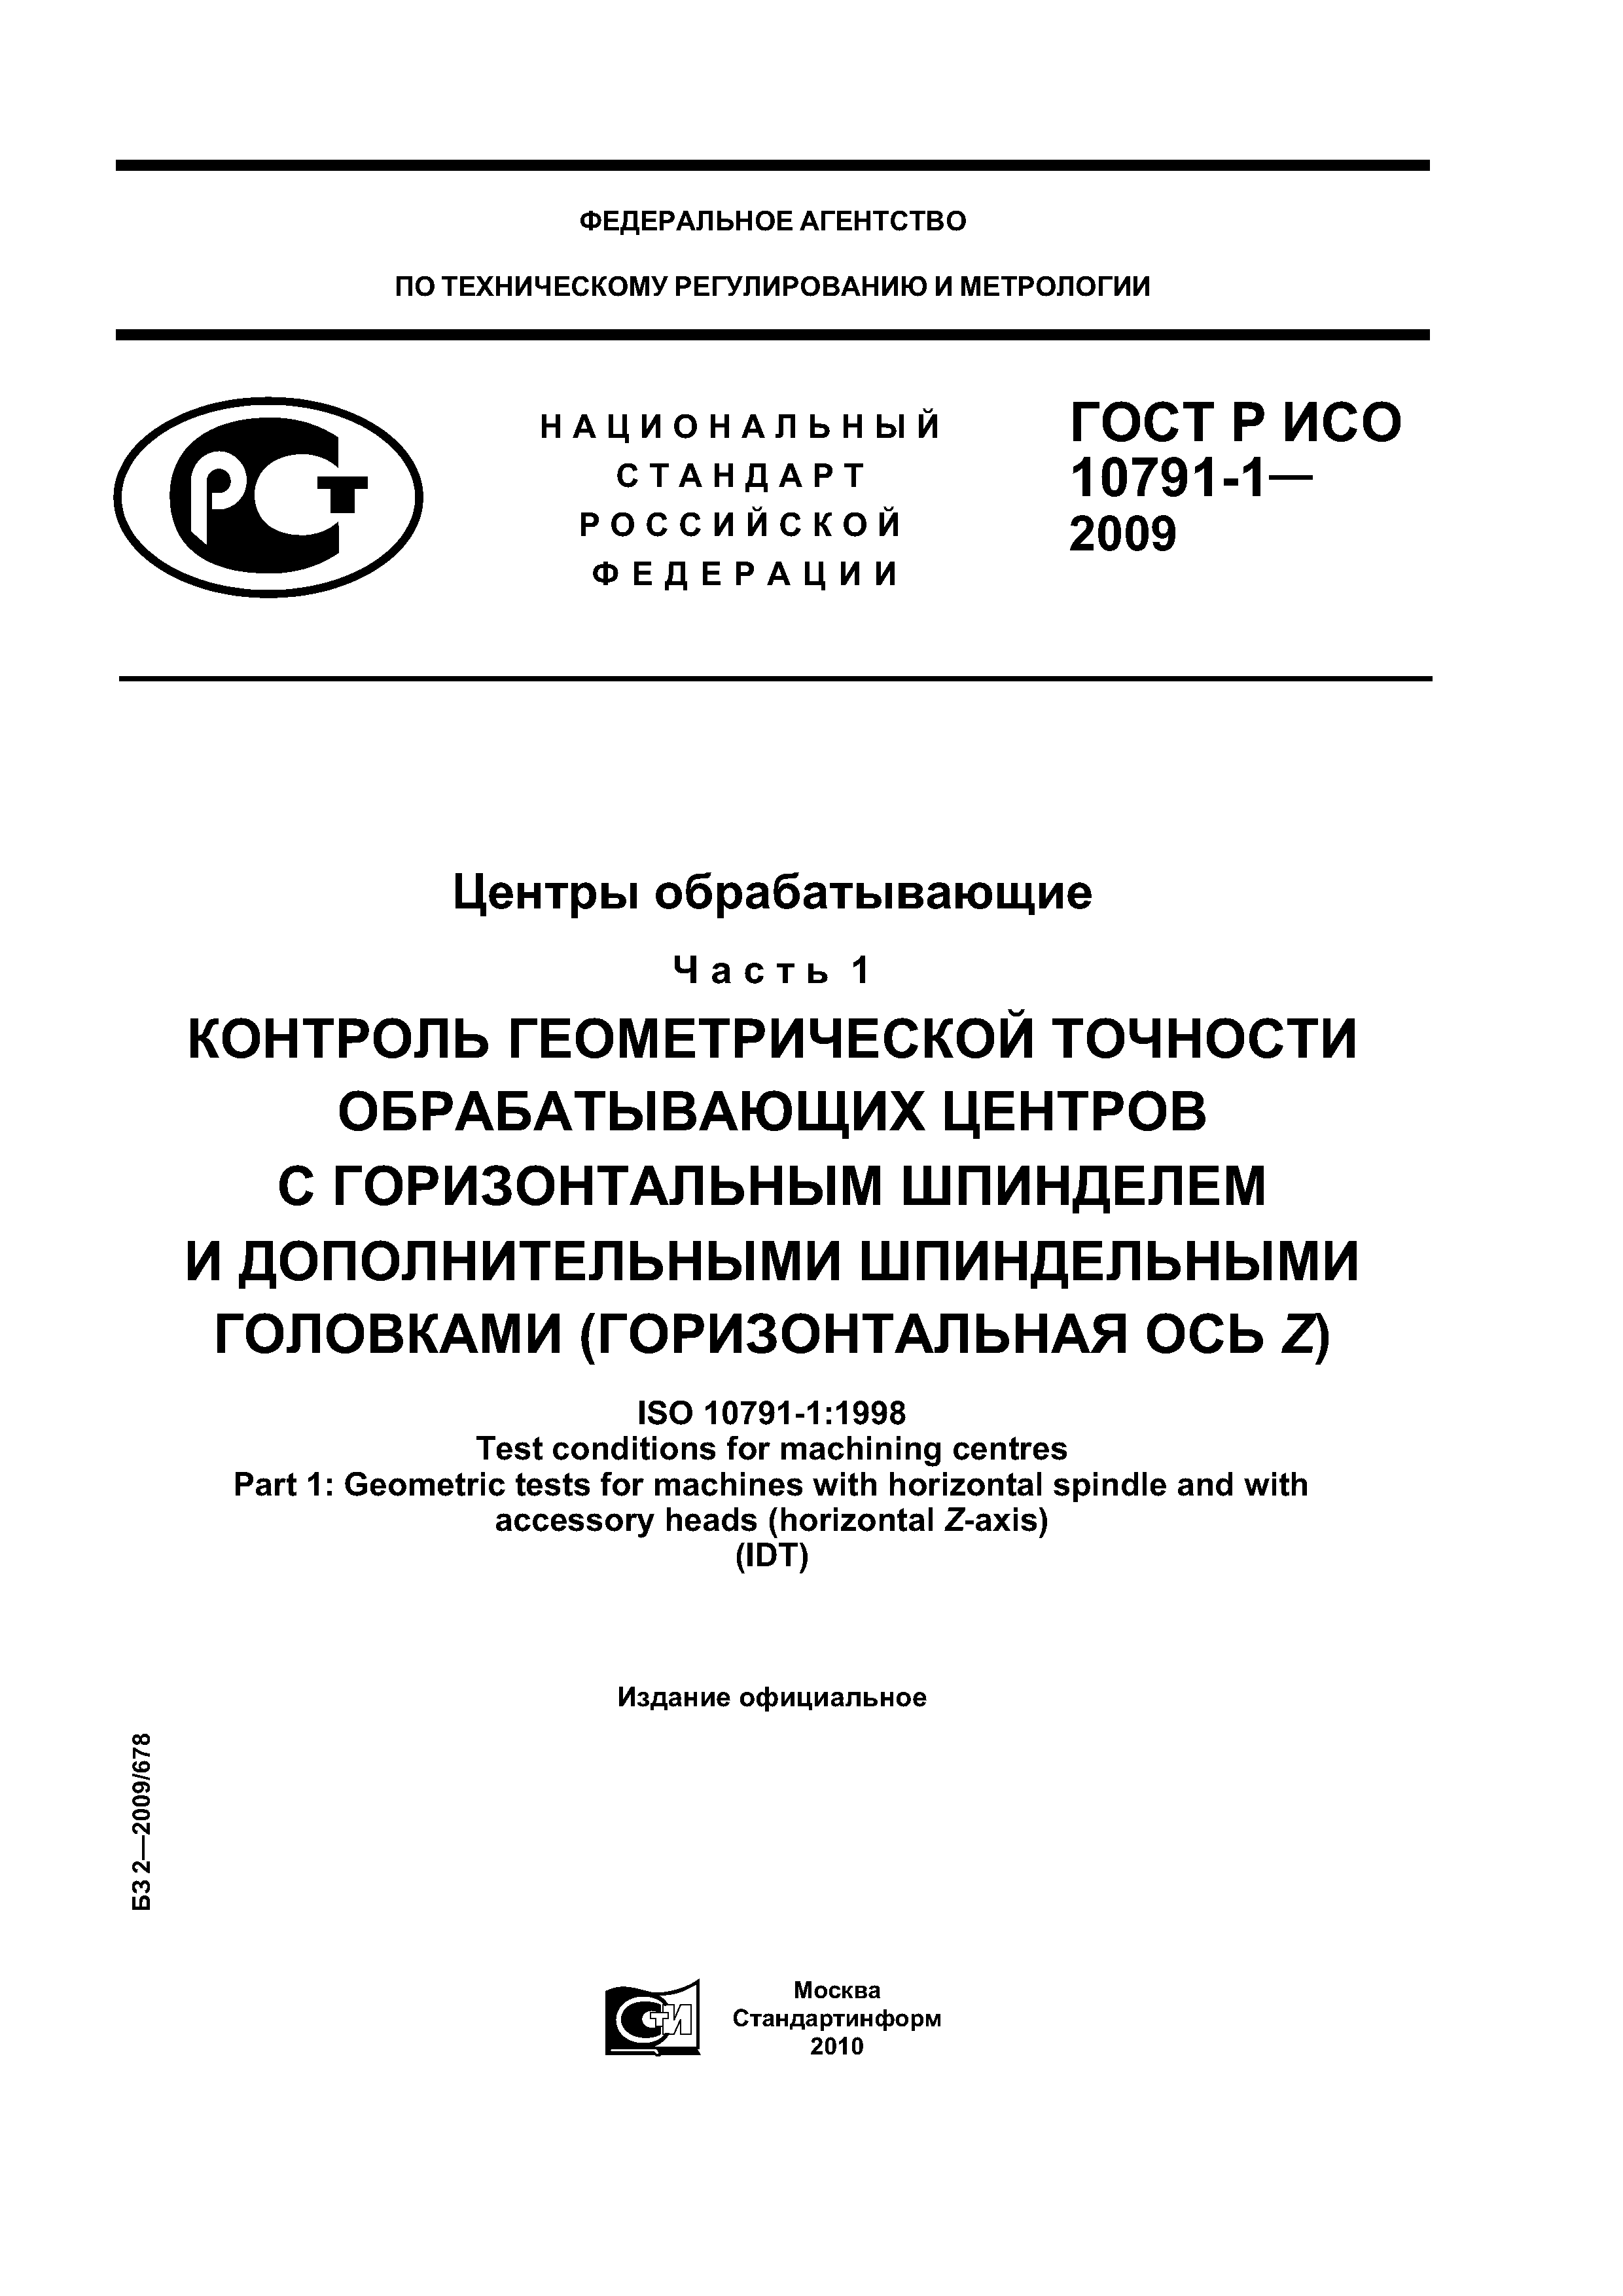 ГОСТ Р ИСО 10791-1-2009